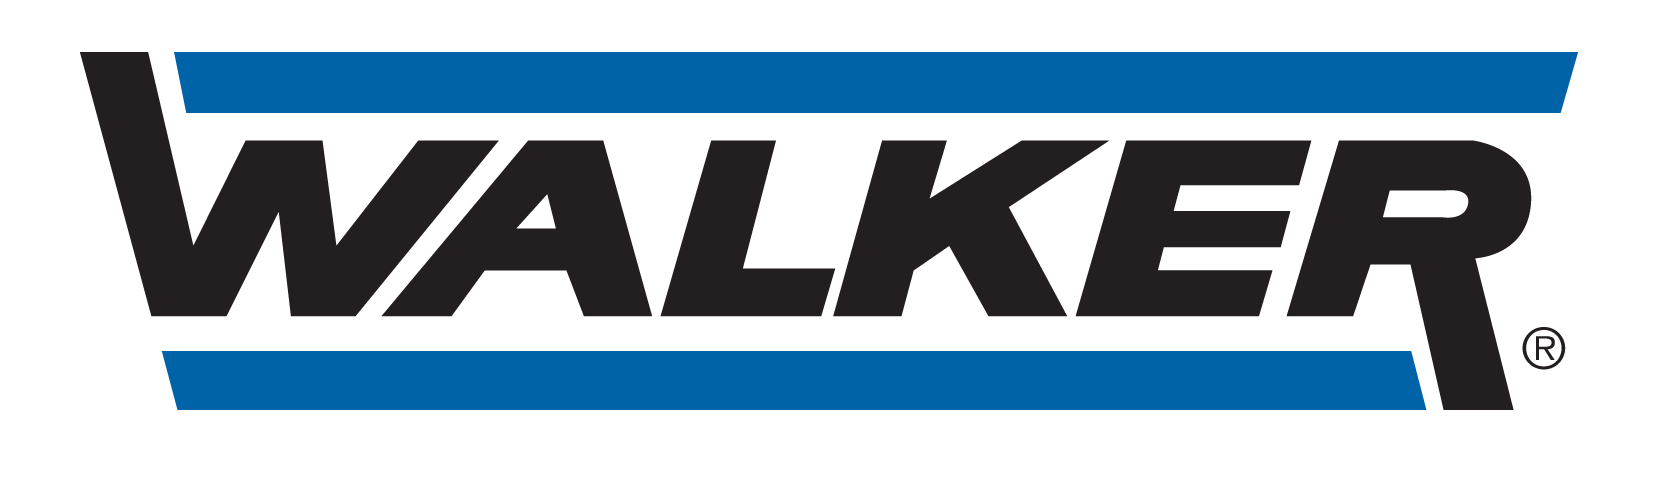 ATELIER GTI - logo Walker